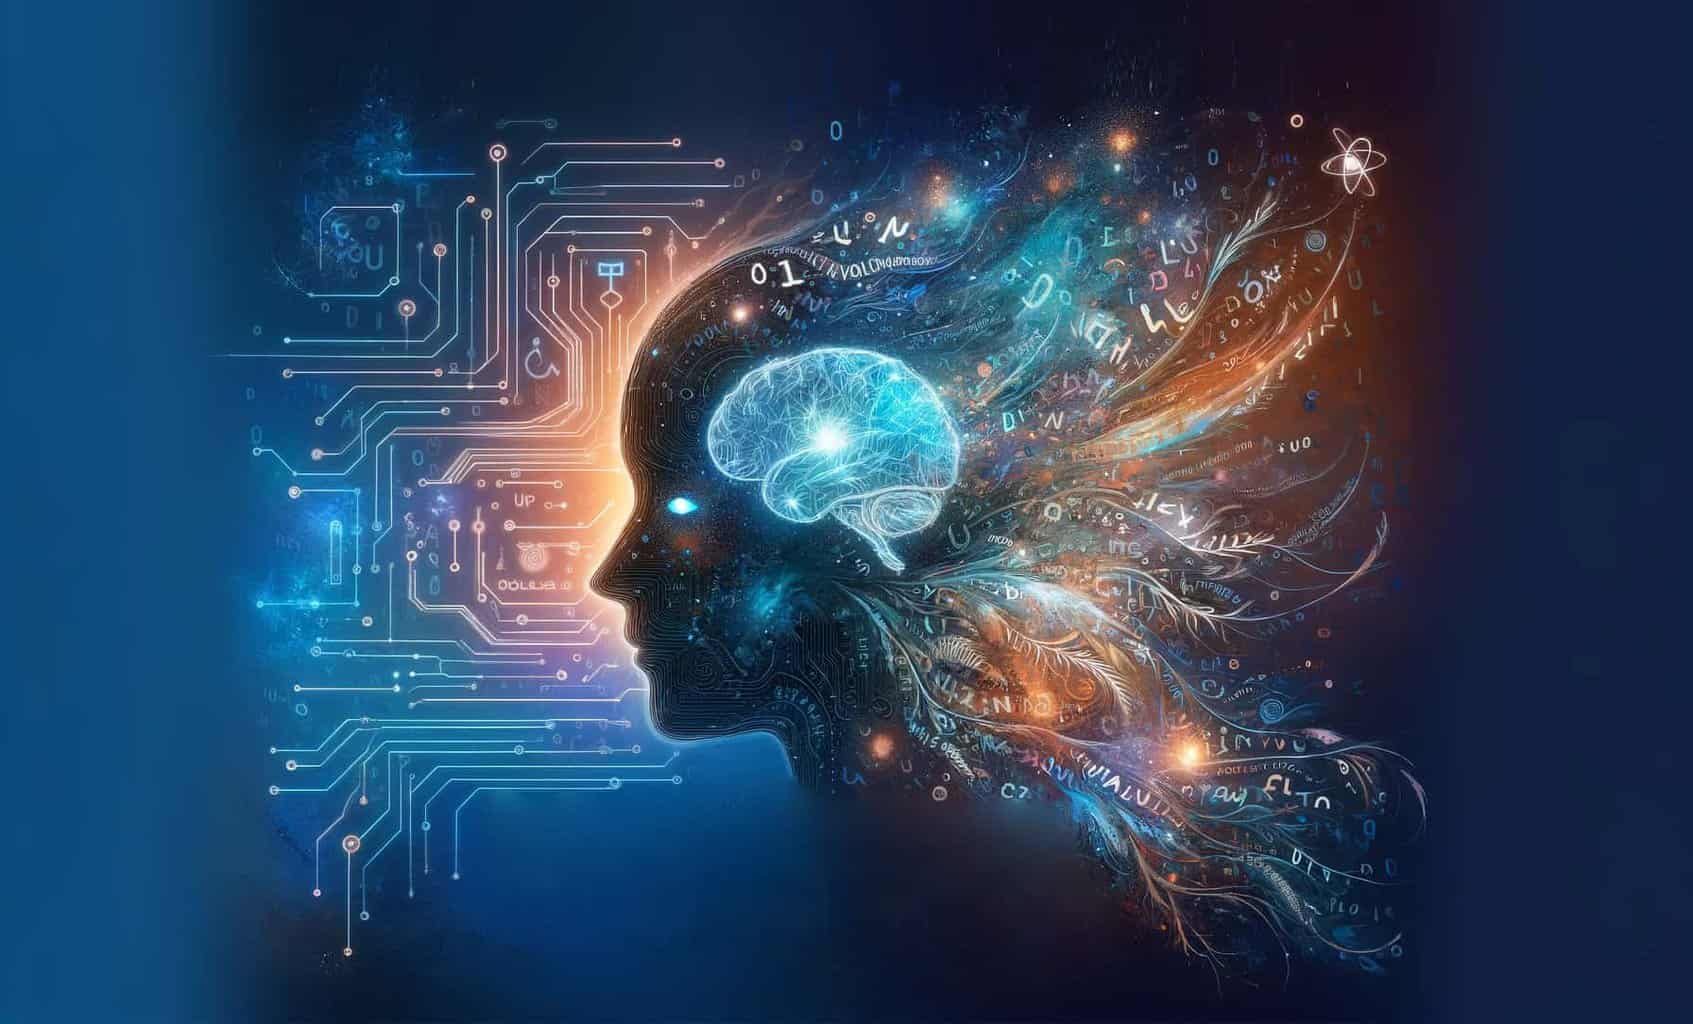 Faceți inteligența artificială să scrie ca dumneavoastră: Schimbarea textului AI în text uman